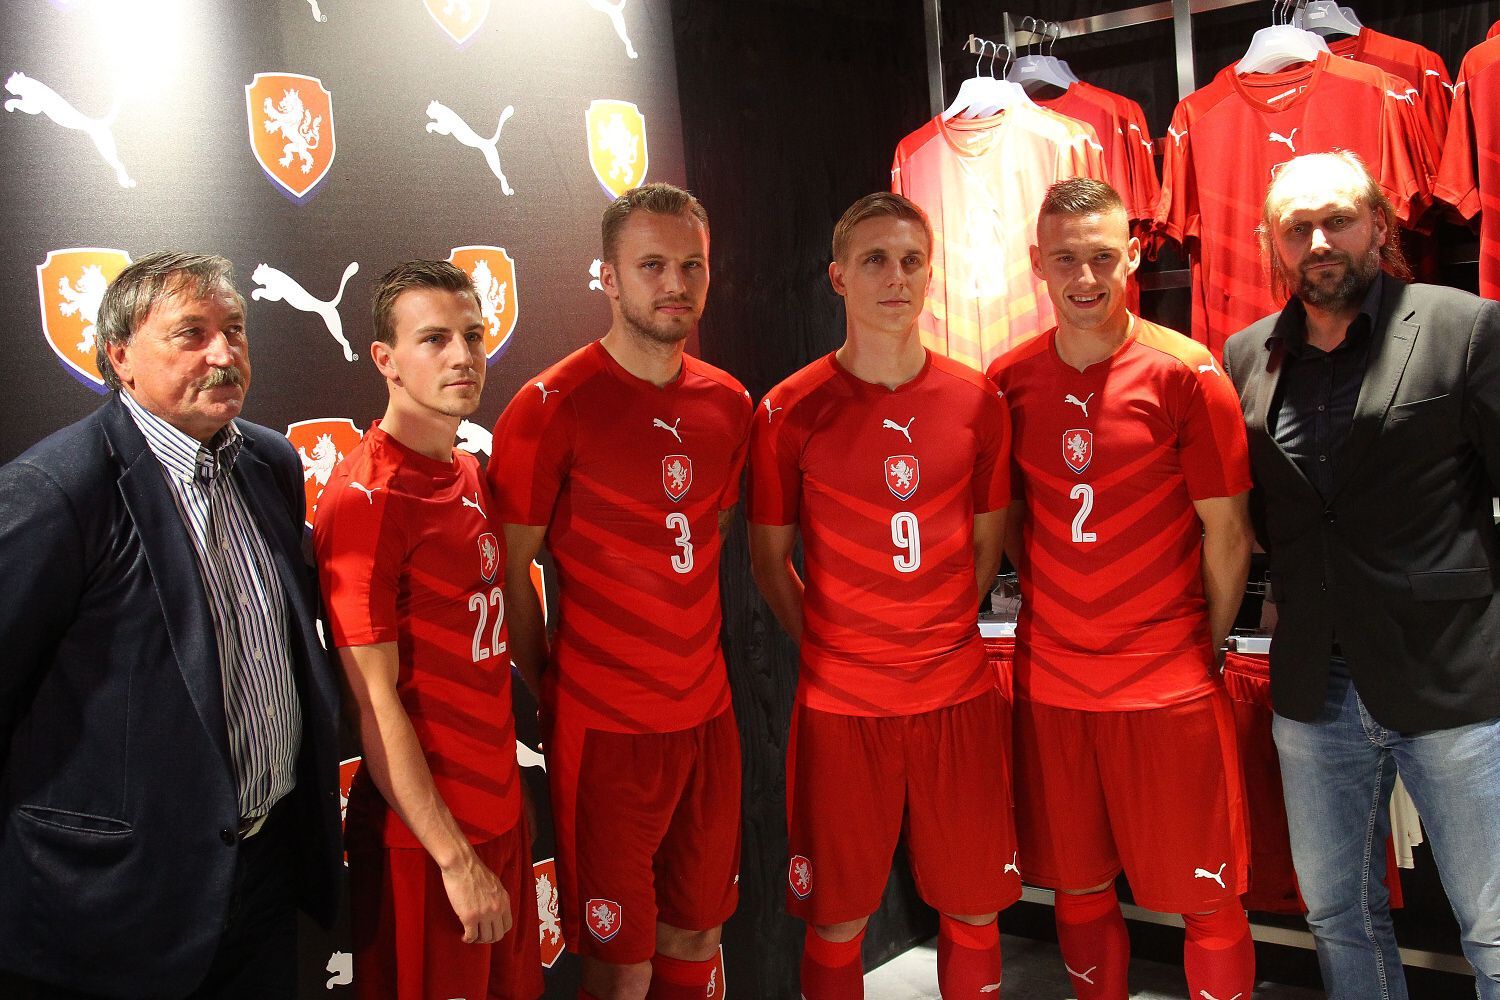 Nové dresy fotbalové reprezentace na Euro 2016: Bořek Dočkal, Michal Kadlec, Pavel Kadeřábek, Václav Darida, Pavel Němeček a Antonin Panenka